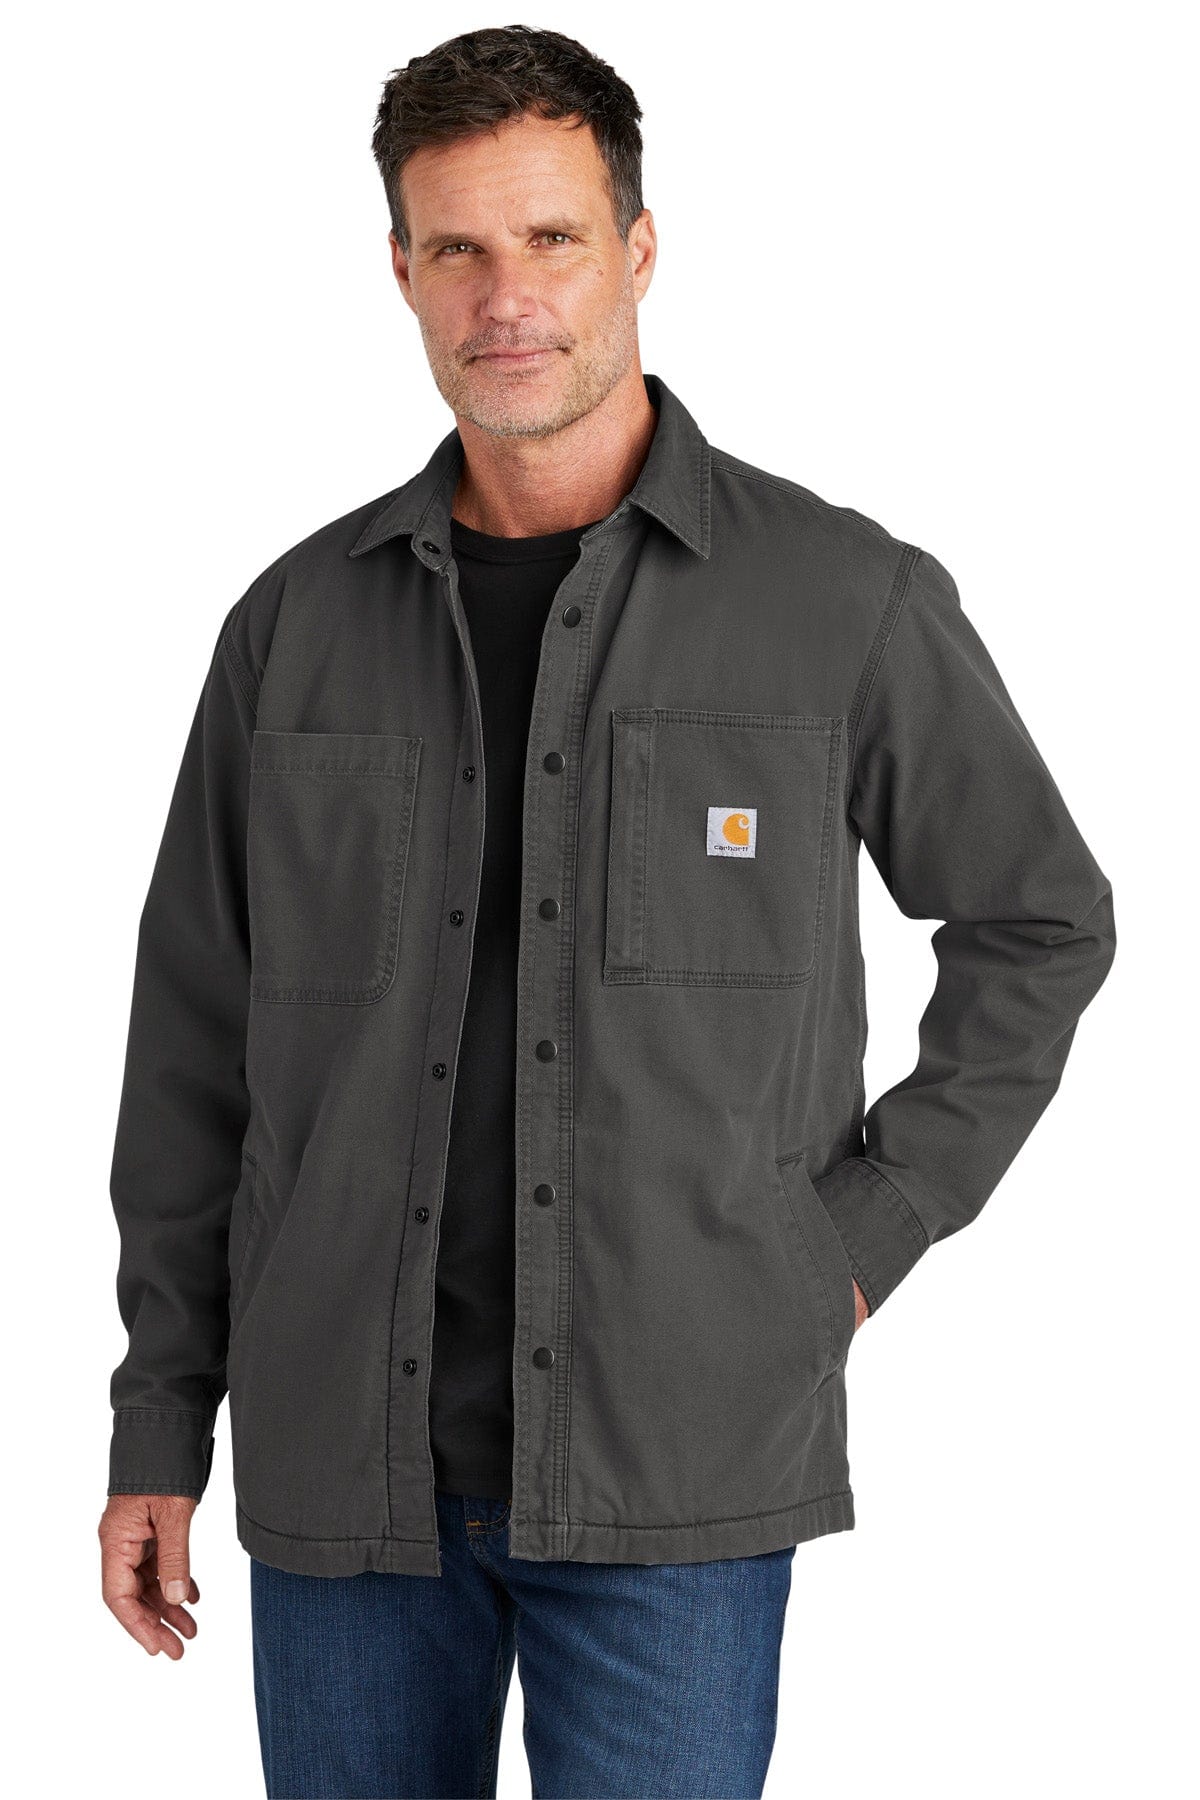 CARHARTT Men's Fleece Lined Shirt Jacket